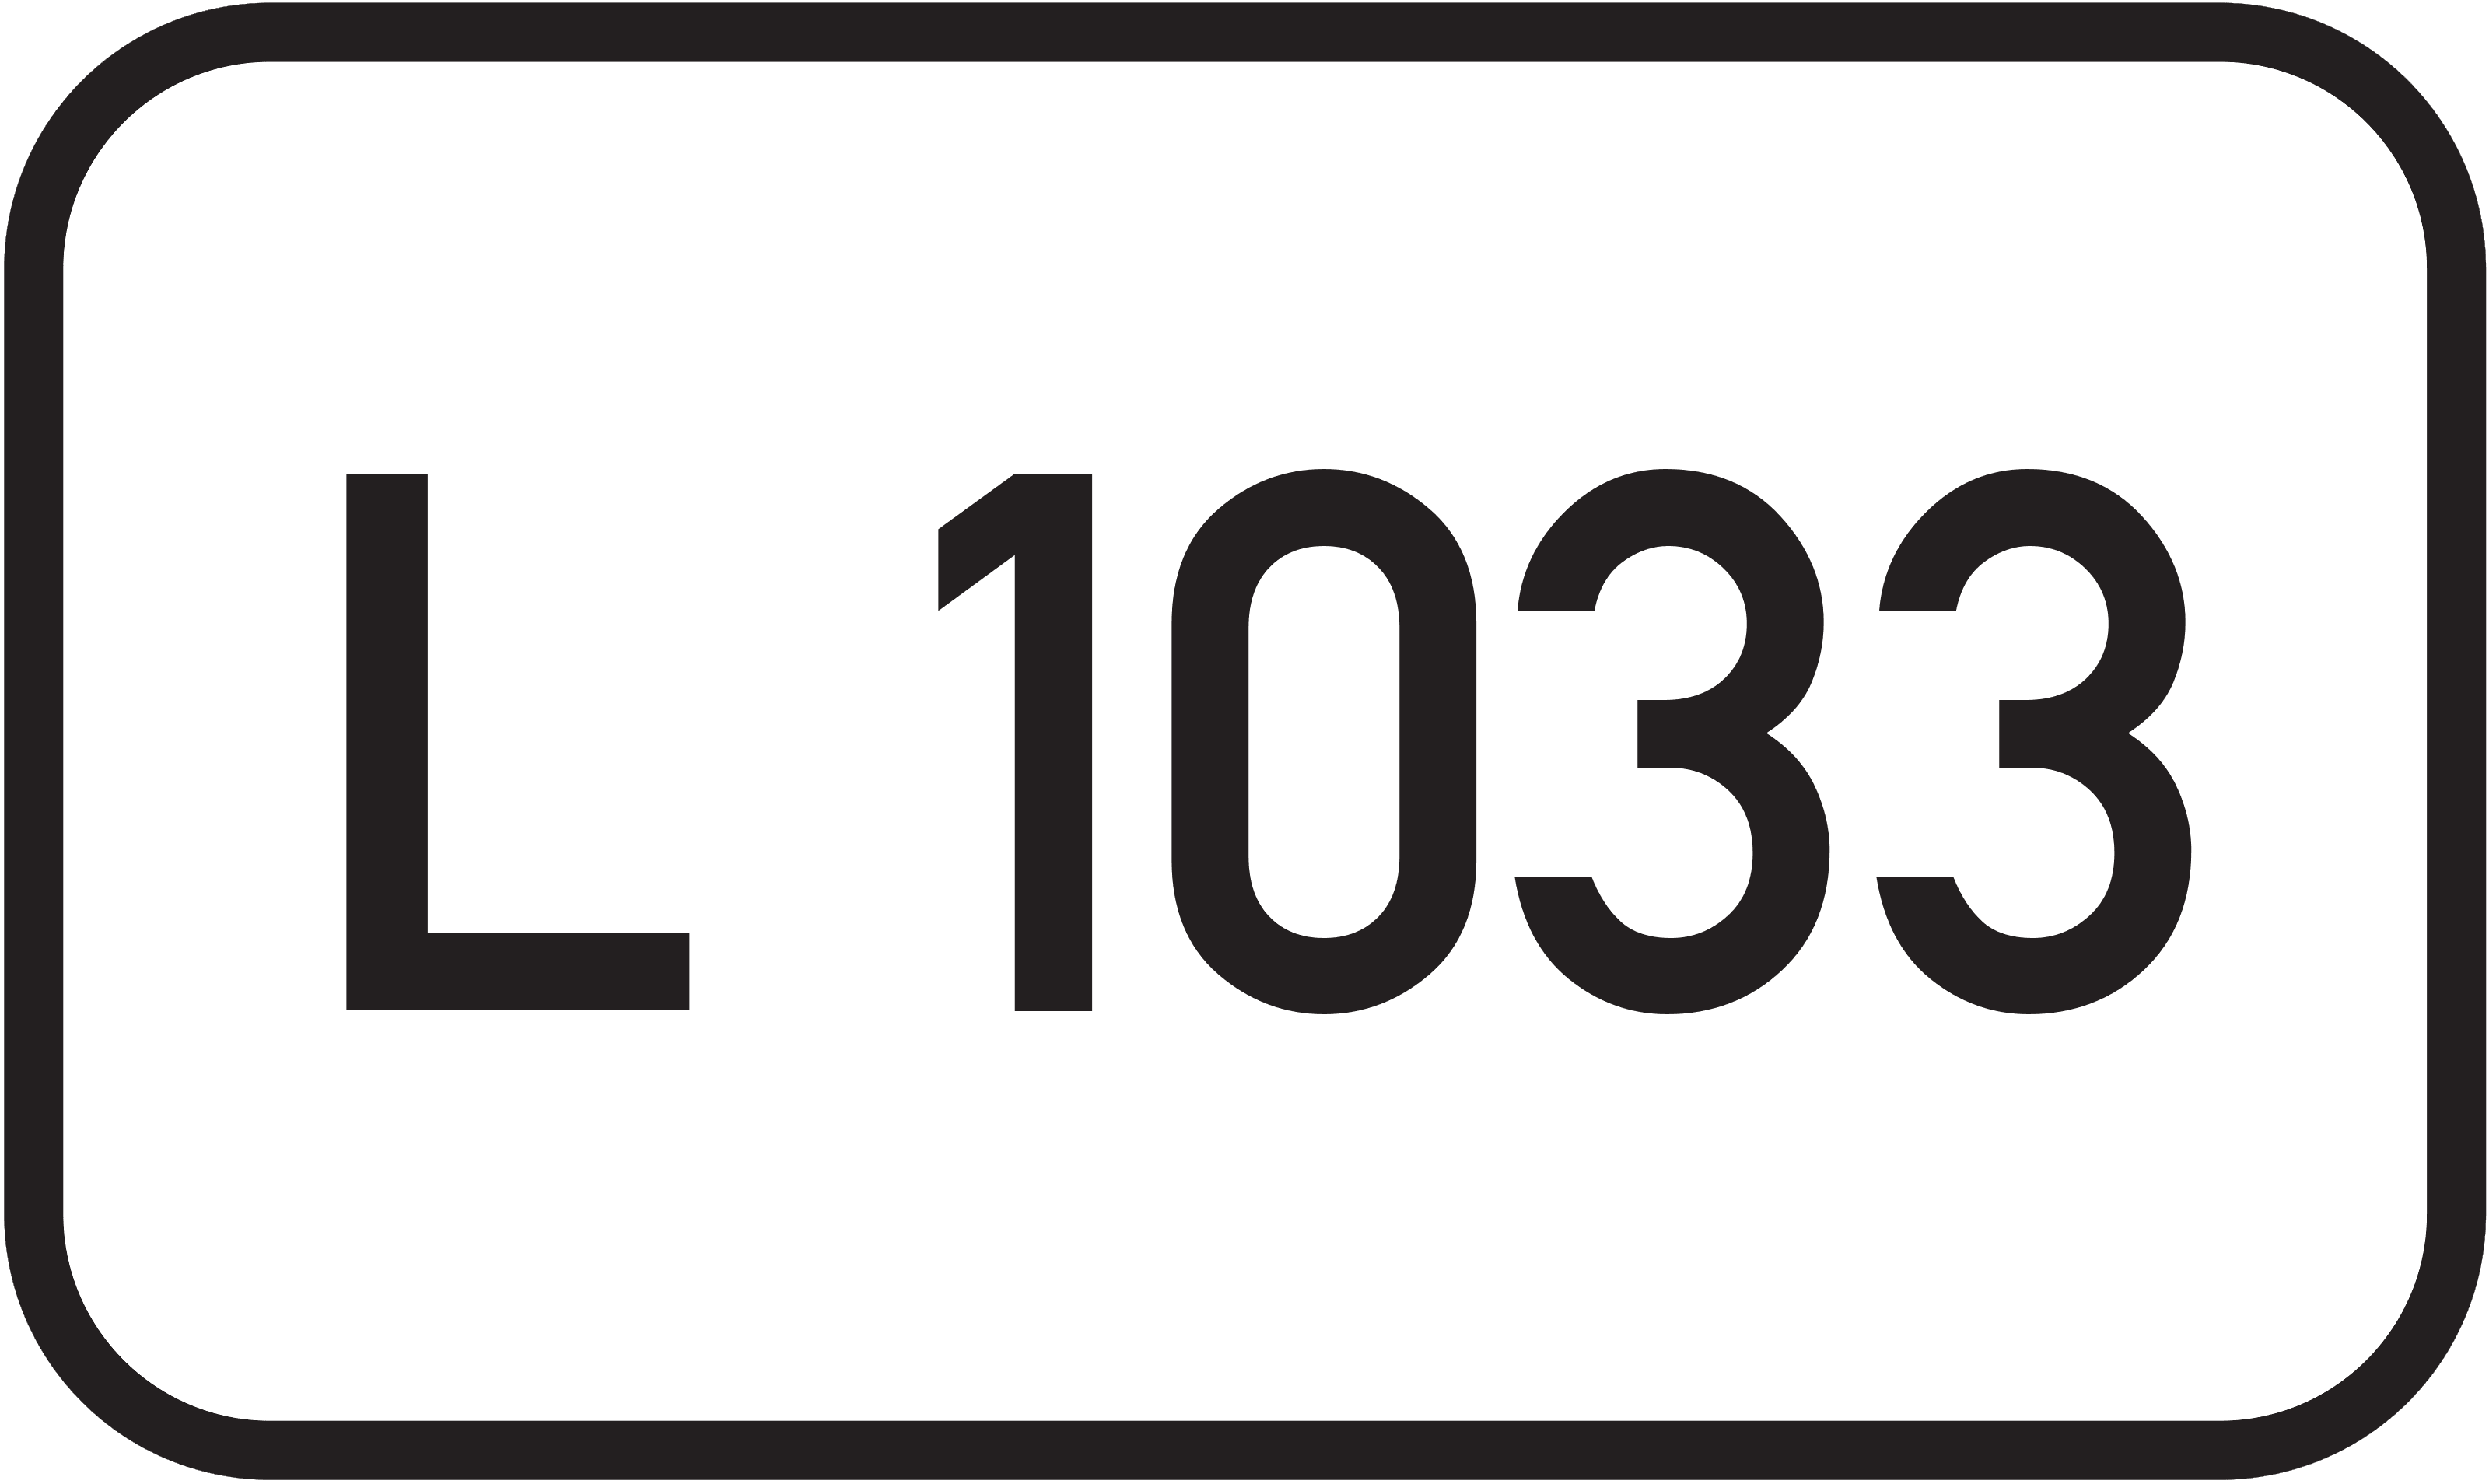 Landesstraße L 1033